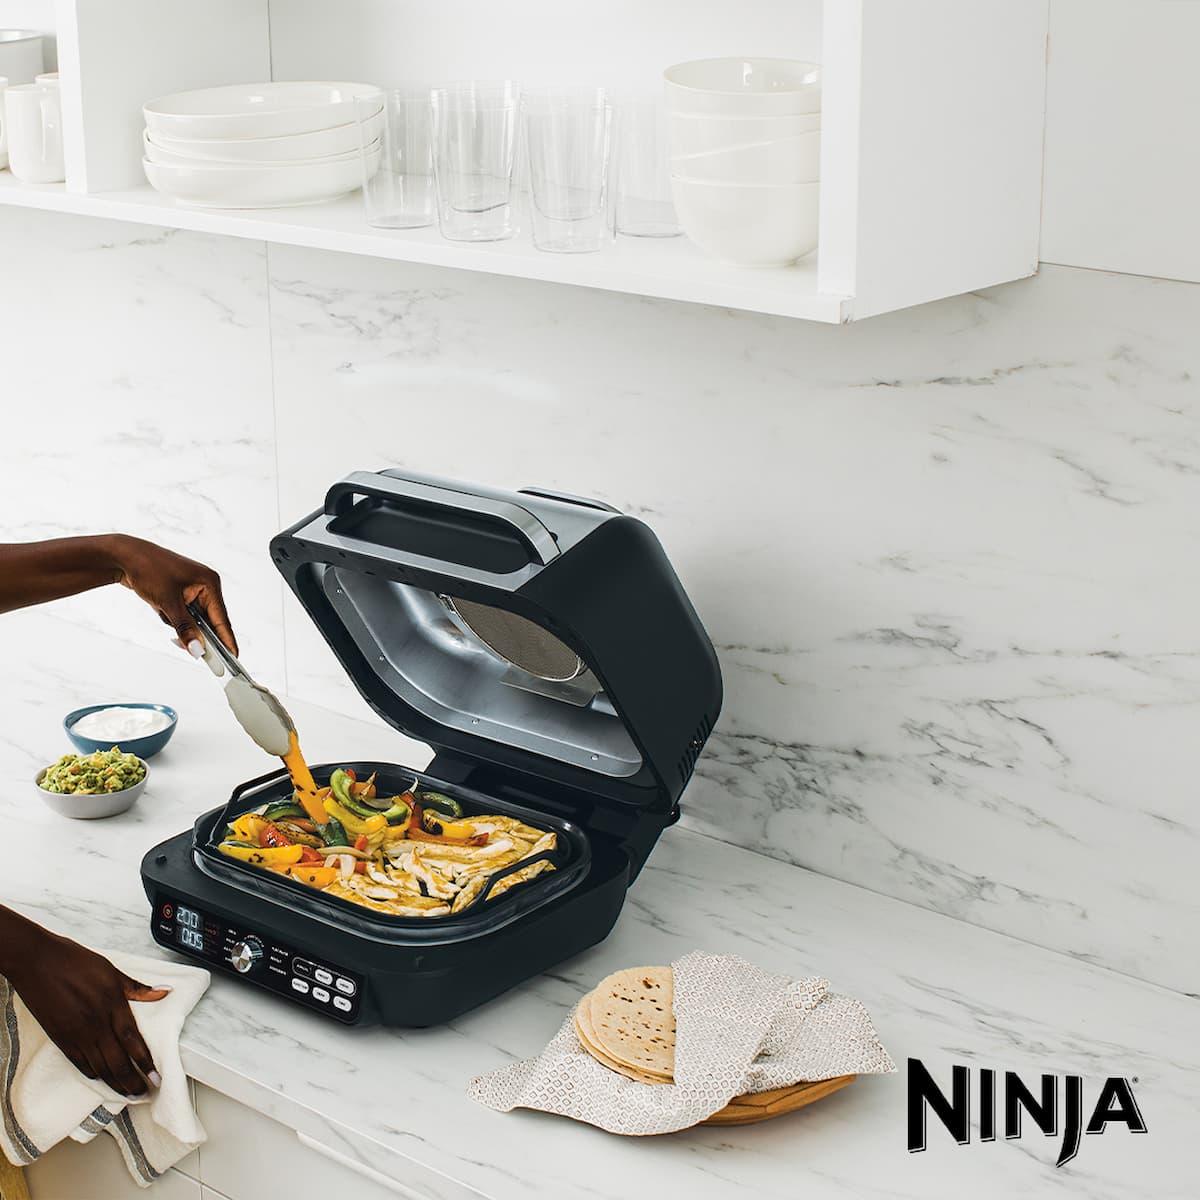 Ninja Foodi Max Pro Health Grill review: Fast, fat-free cooking